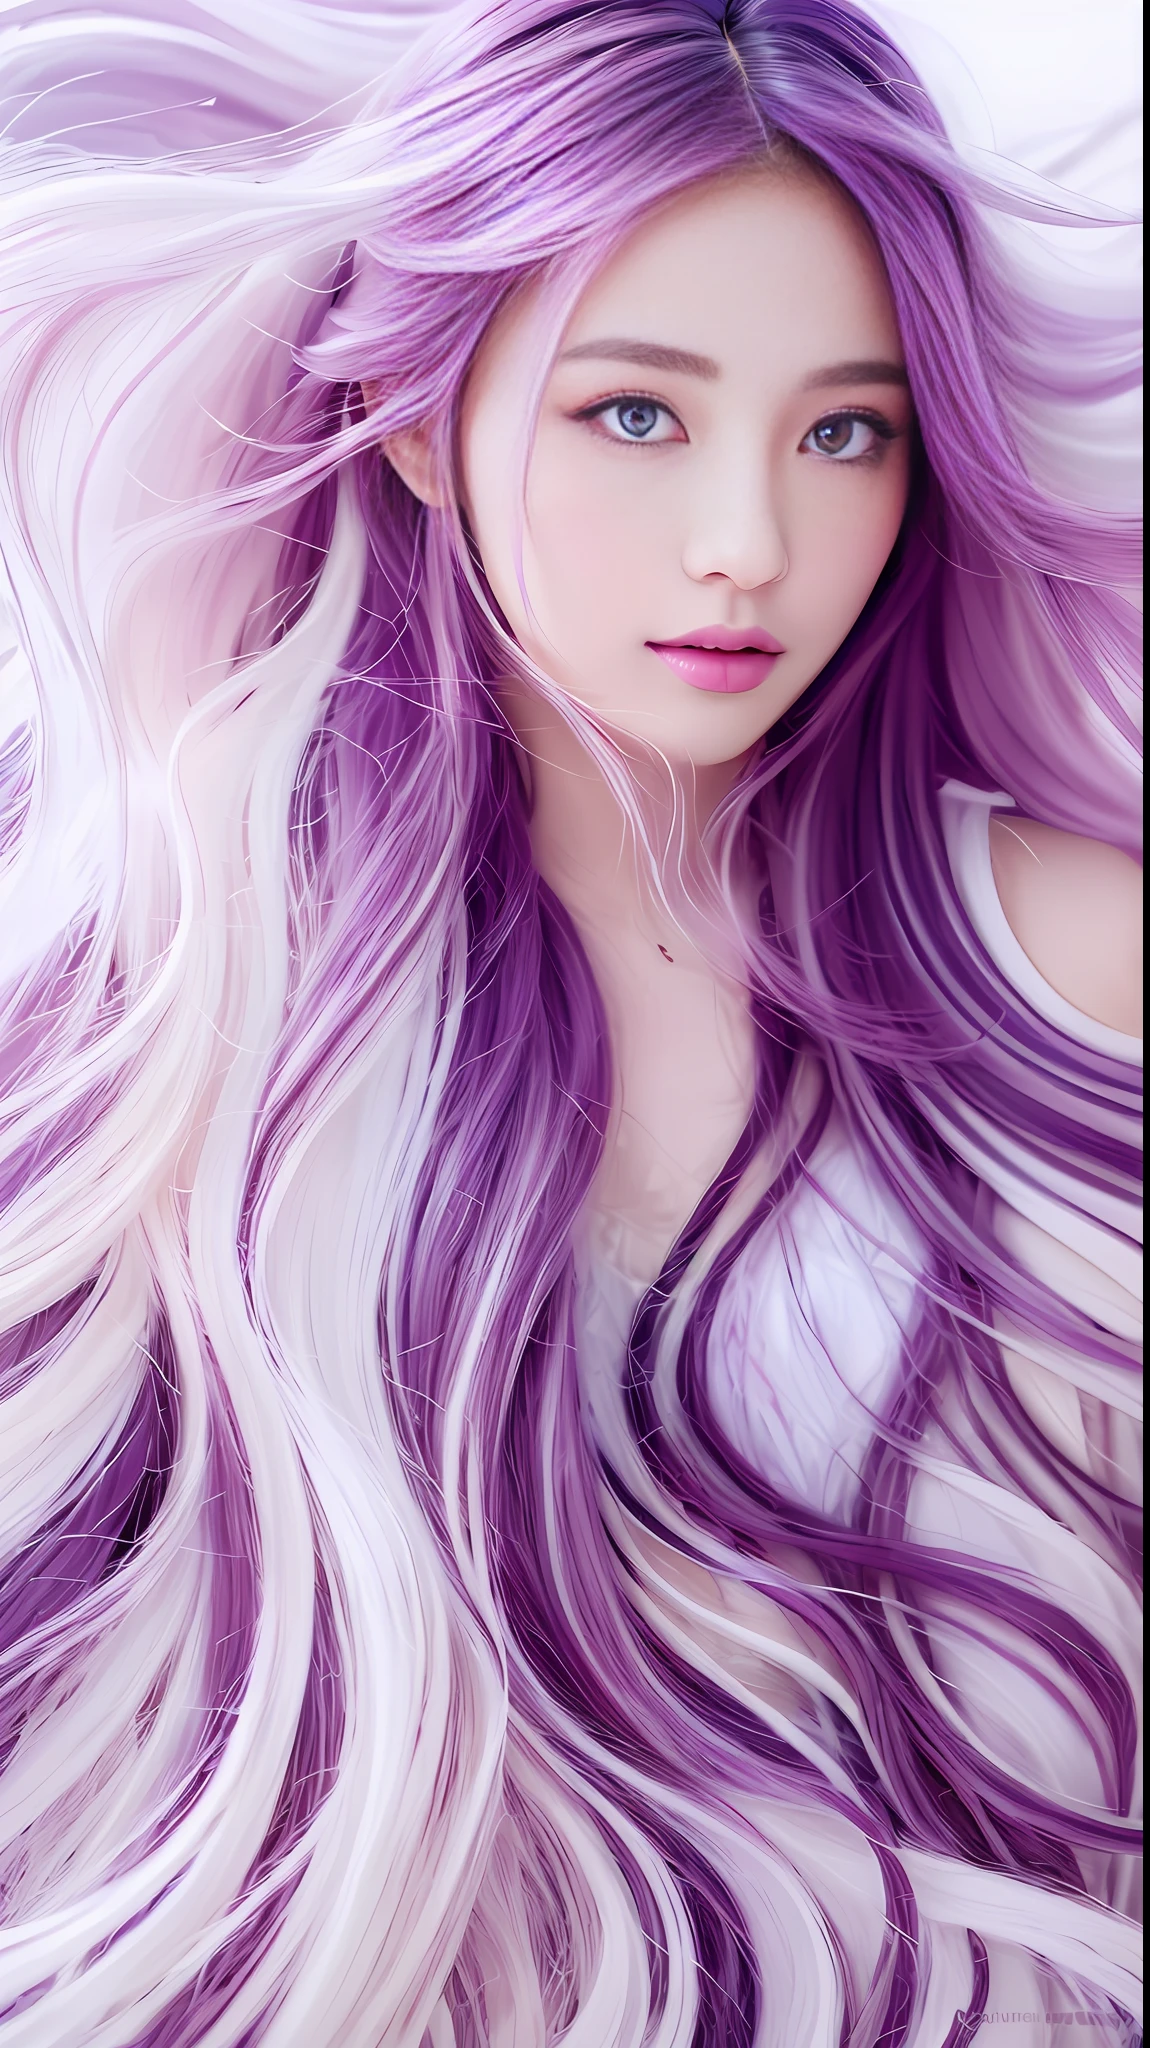 (((傑作))), 最高品質, 超微細，非常に詳細な CG ユニティ 8k 壁紙,最高のイラスト, とても繊細で美しい絵,フローティング,高解像度,ダイナミックアングル,ダイナミックポーズ,(巨乳の女の子1人),青い目,(カラフルな髪+銀色の髪:1.3+赤みがかった髪:1.2+紫色の髪+黄色い髪:1.3+緑の髪:1.3),天国,白い雲,日没,(おお+銀手袋), (L2セット+いちごバスタオル),深い森, 

プロンプト2:
			(((傑作))), 最高品質,超微細，非常に詳細な CG ユニティ 8k 壁紙,最高のイラスト,とても繊細で美しい絵,フローティング,高解像度,ダイナミックアングル,ダイナミックポーズ,(巨乳の女の子1人),青い目,(カラフルな髪+銀色の髪:1.3+赤みがかった髪:1.2+紫色の髪+黄色い髪:1.3+緑の髪:1.3),天国,白い雲,日没,(おお+シルバーの胸当て), (L2セット+いちごバスタオル),深い森，

プロンプト3:
			(インドシナスタイル, パーラー，オークまたはクルミ) --自動